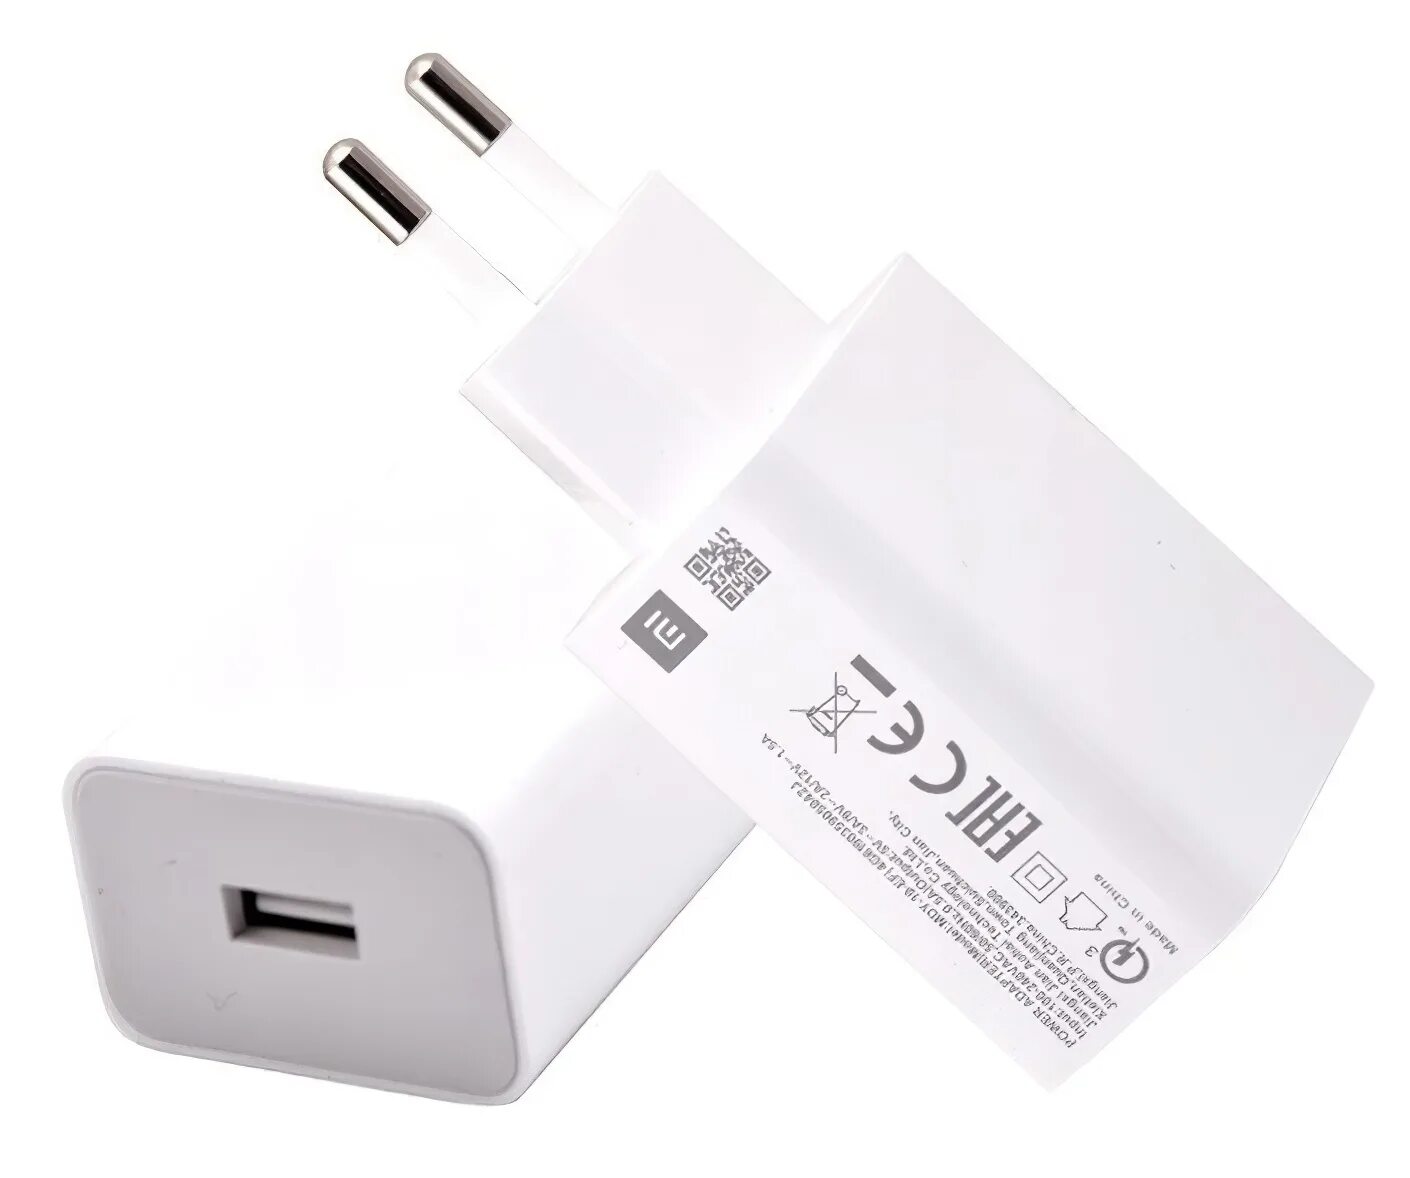 СЗУ Xiaomi MDY-10-EF. СЗУ Xiaomi Power Adaptor MDY-10-EF 18w. Блок Xiaomi MDY 10 EF. Сетевое зарядное устройство Xiaomi MDY-10-EF, 18 Вт, белый. Купить зарядку ксиоми